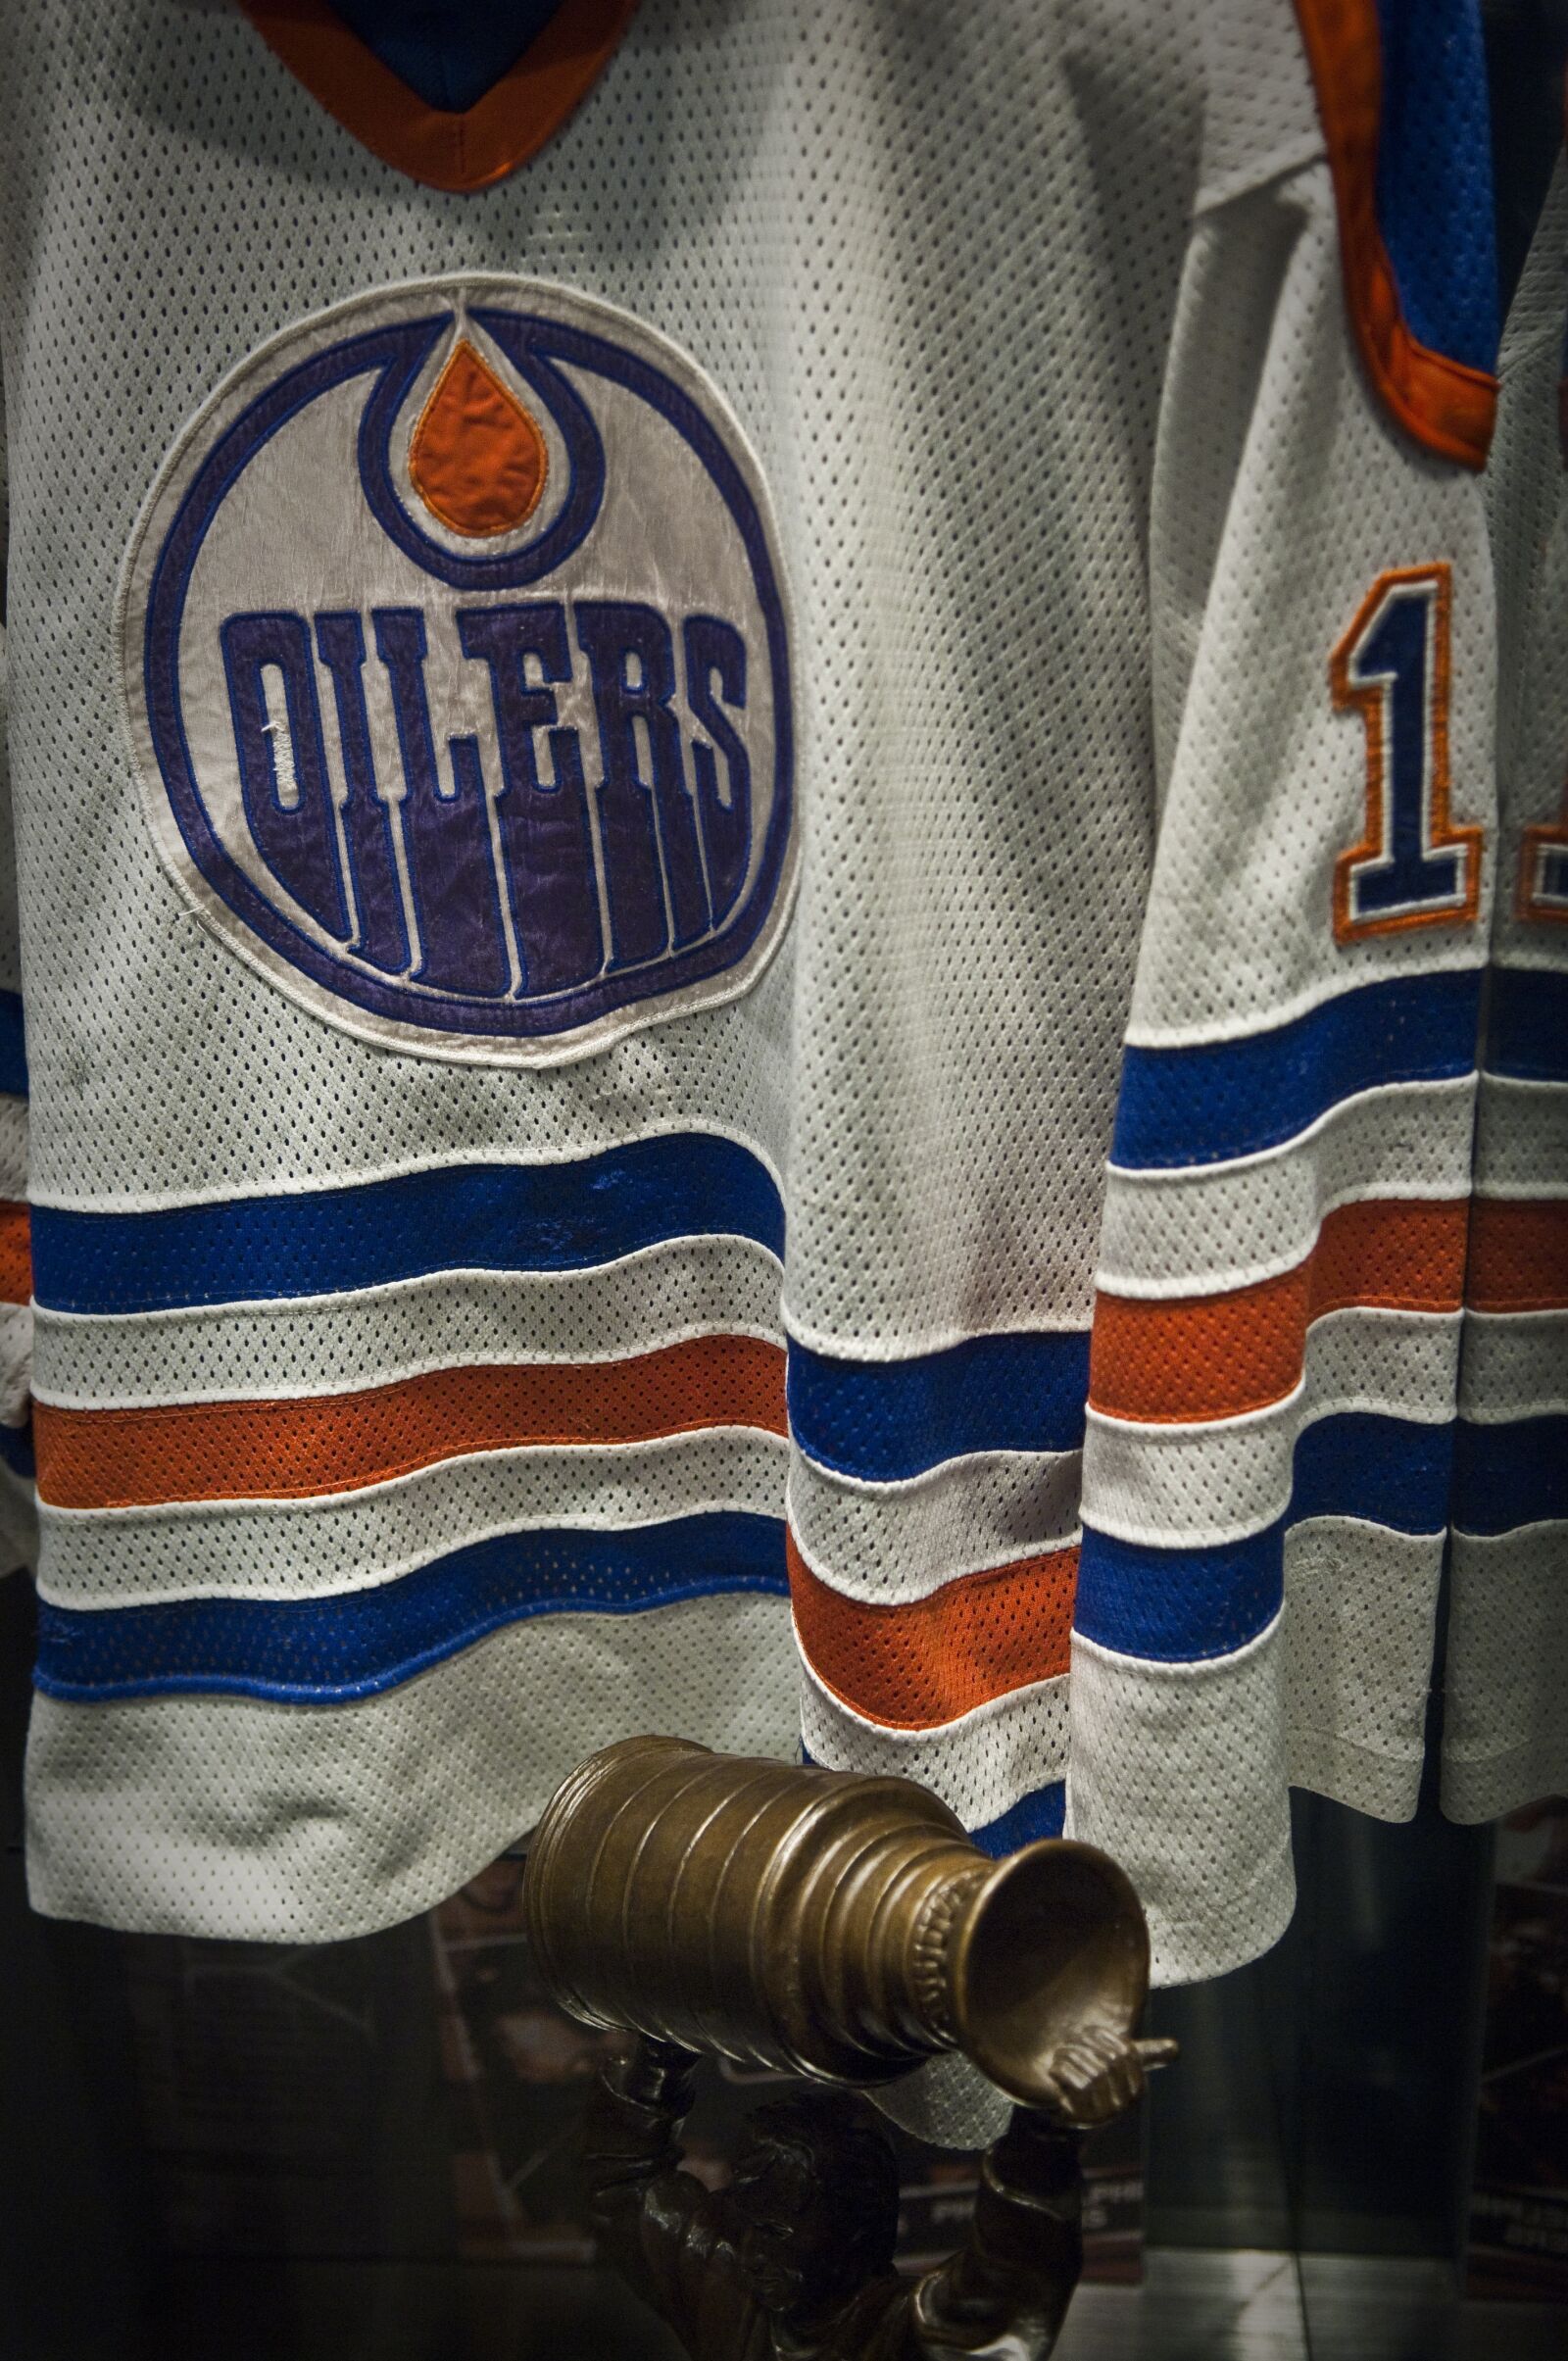 Nikon D2X sample photo. Hockey, hockey hall of photography